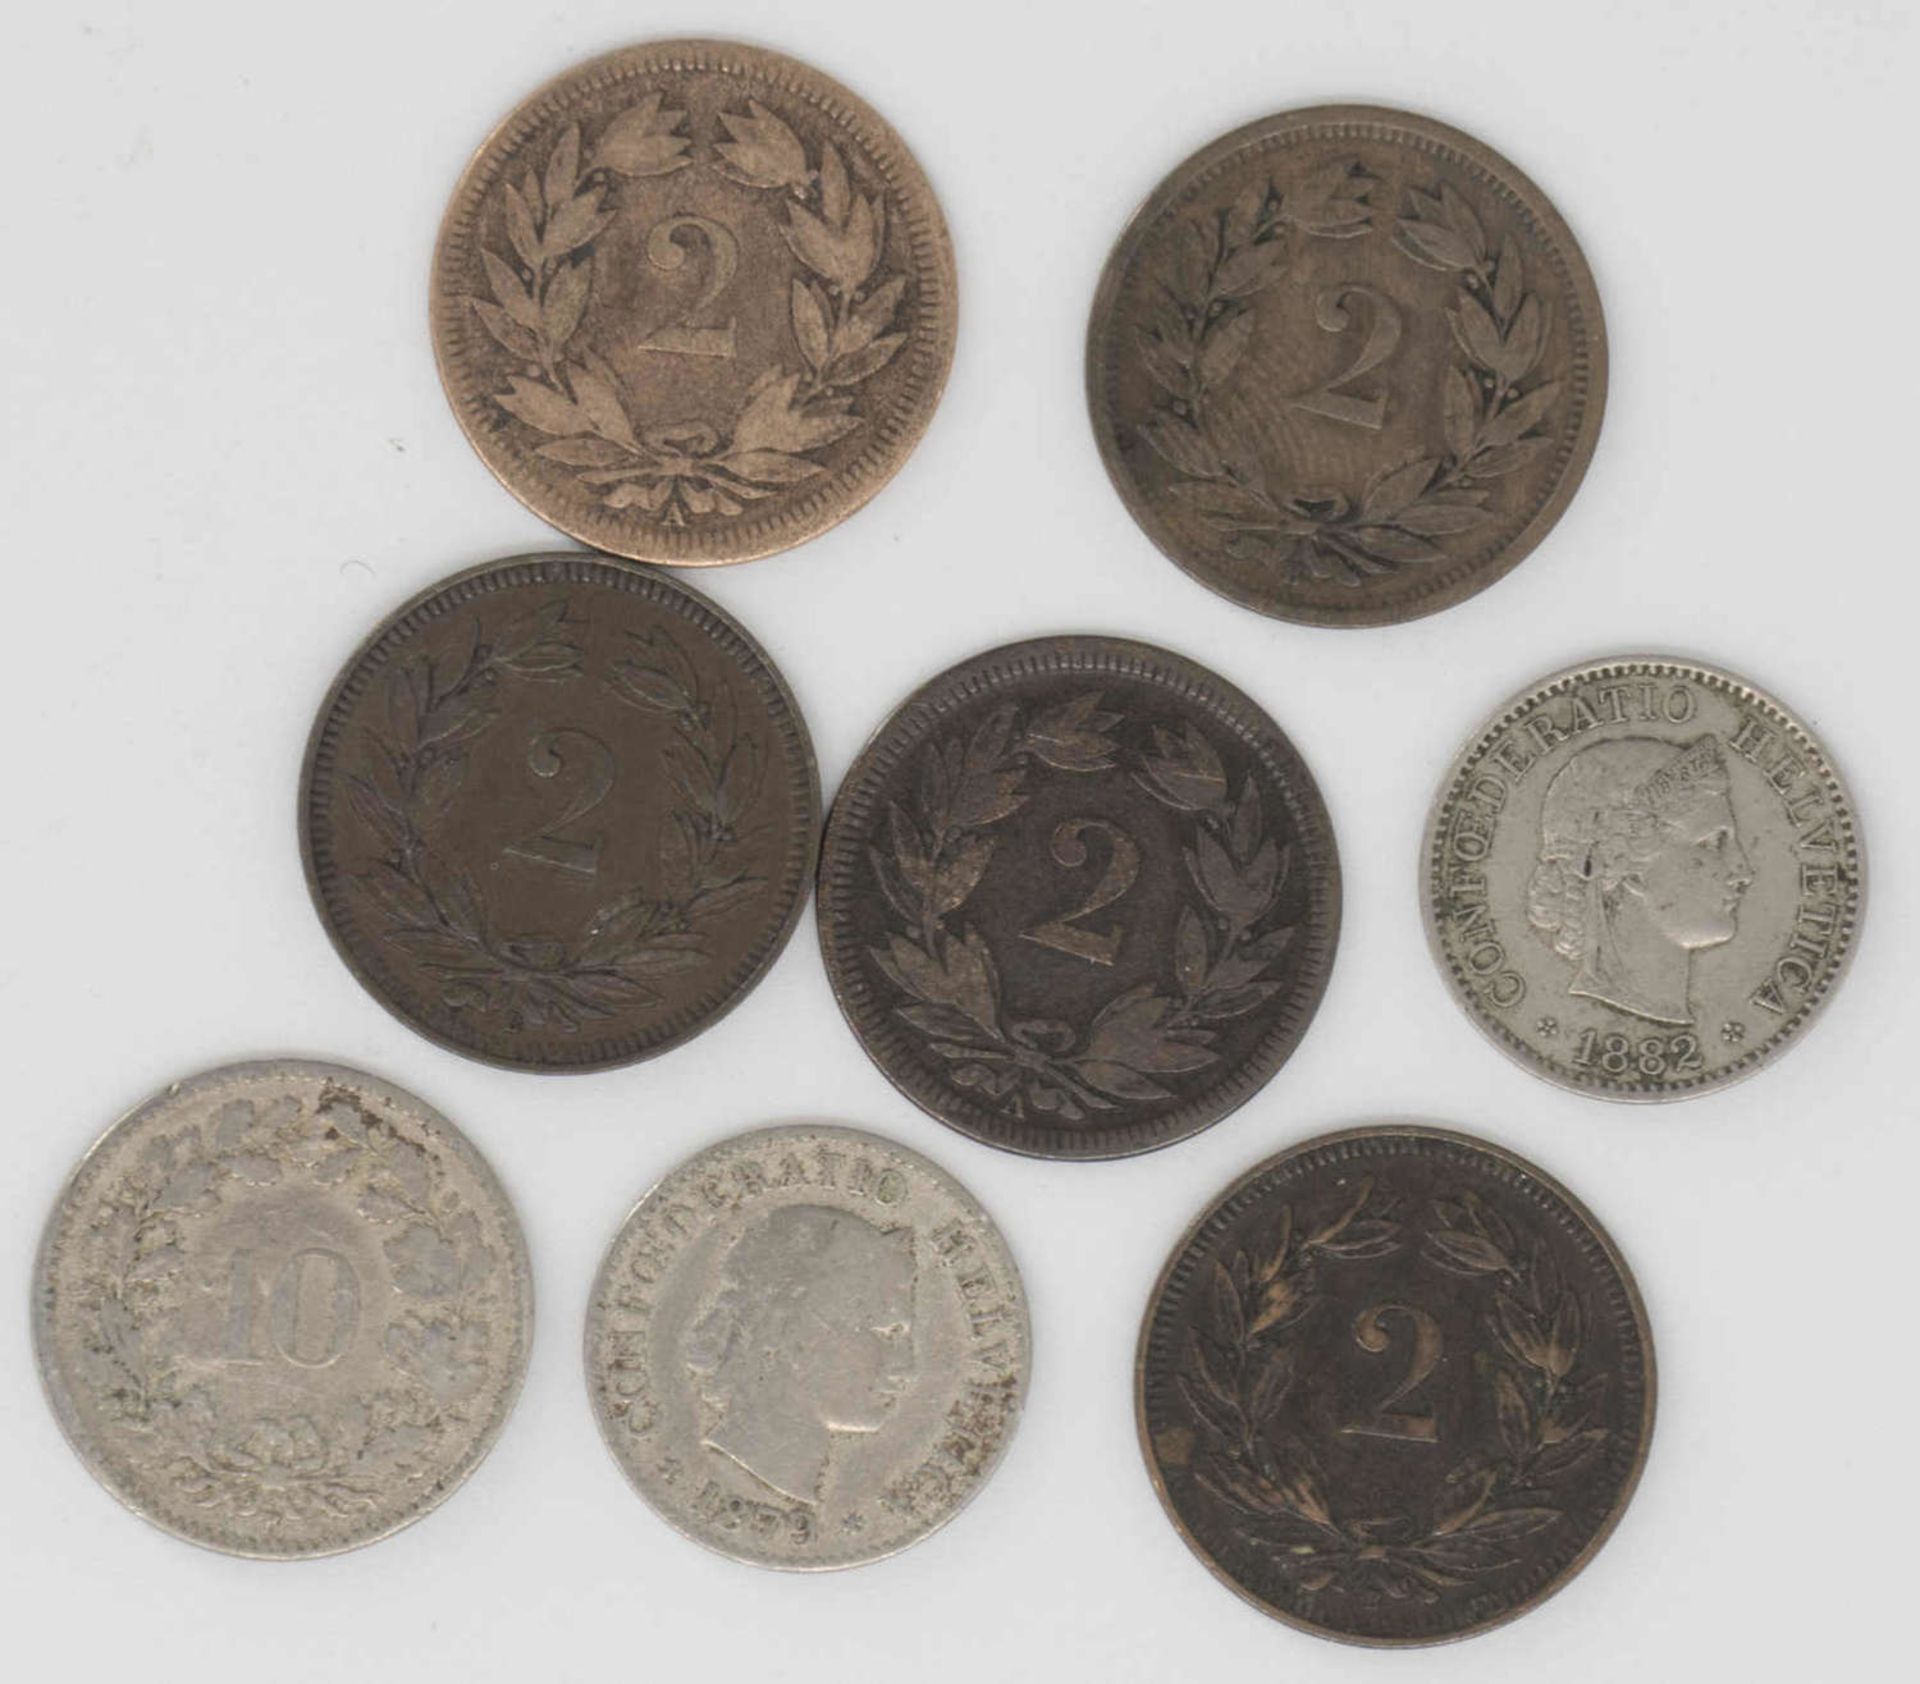 Schweiz 1851/1915, Lot Umlaufmünzen, bestehend aus 2.-, 5.- und 10 Rappen. Erhaltung: ss.Schweiz - Image 2 of 2